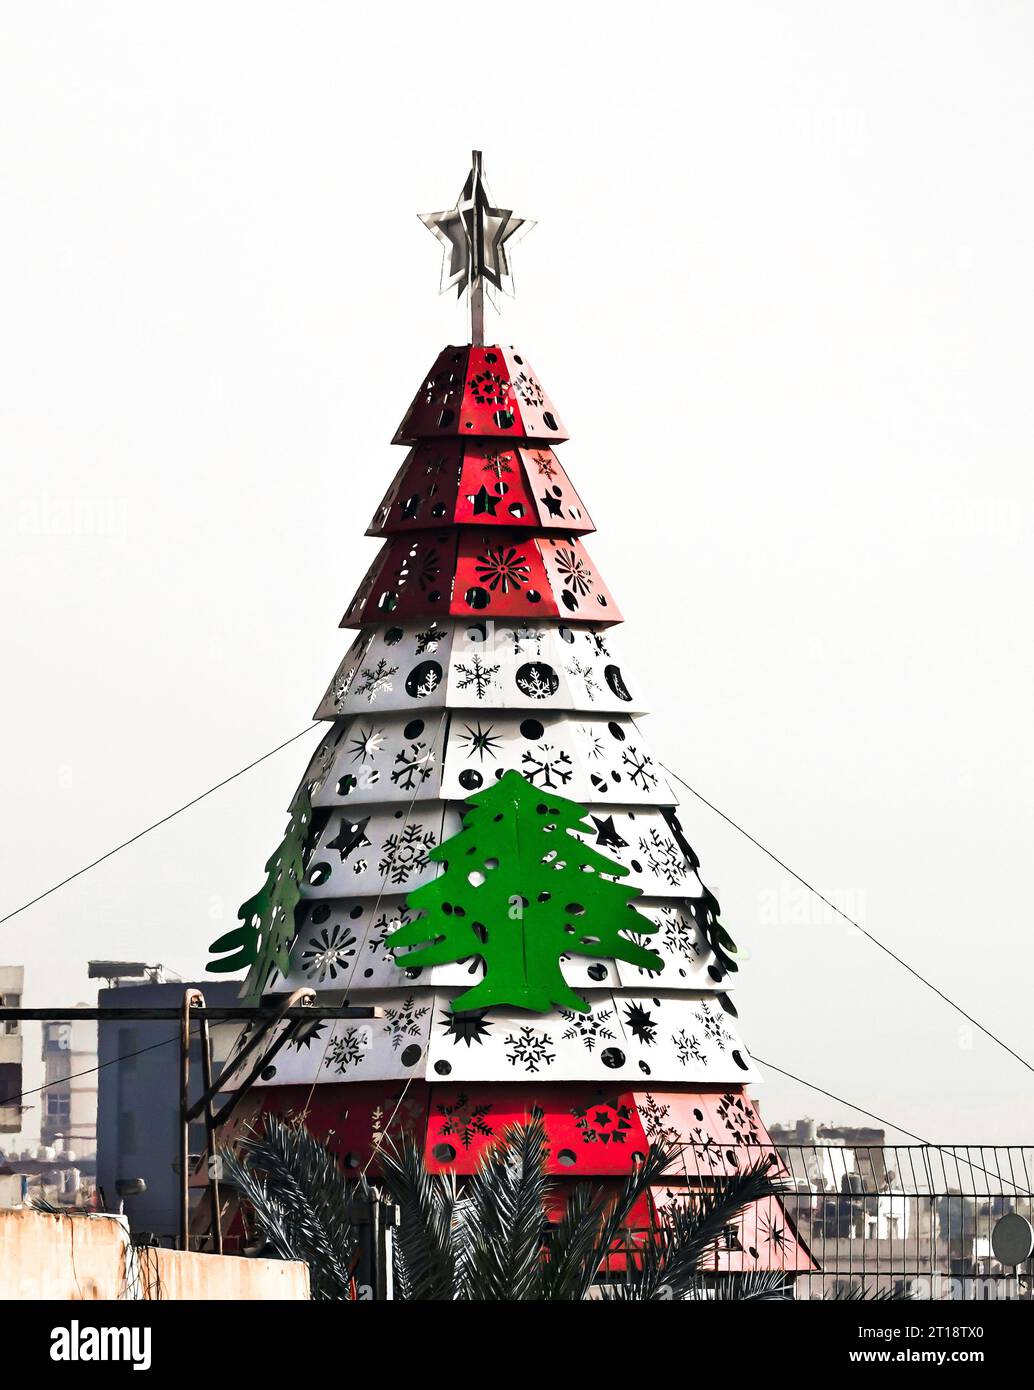 Rosso e bianco libanese con cedro verde, simbolo nazionale del Libano, su una torre alberata nella città di Beirut, Libano Foto Stock